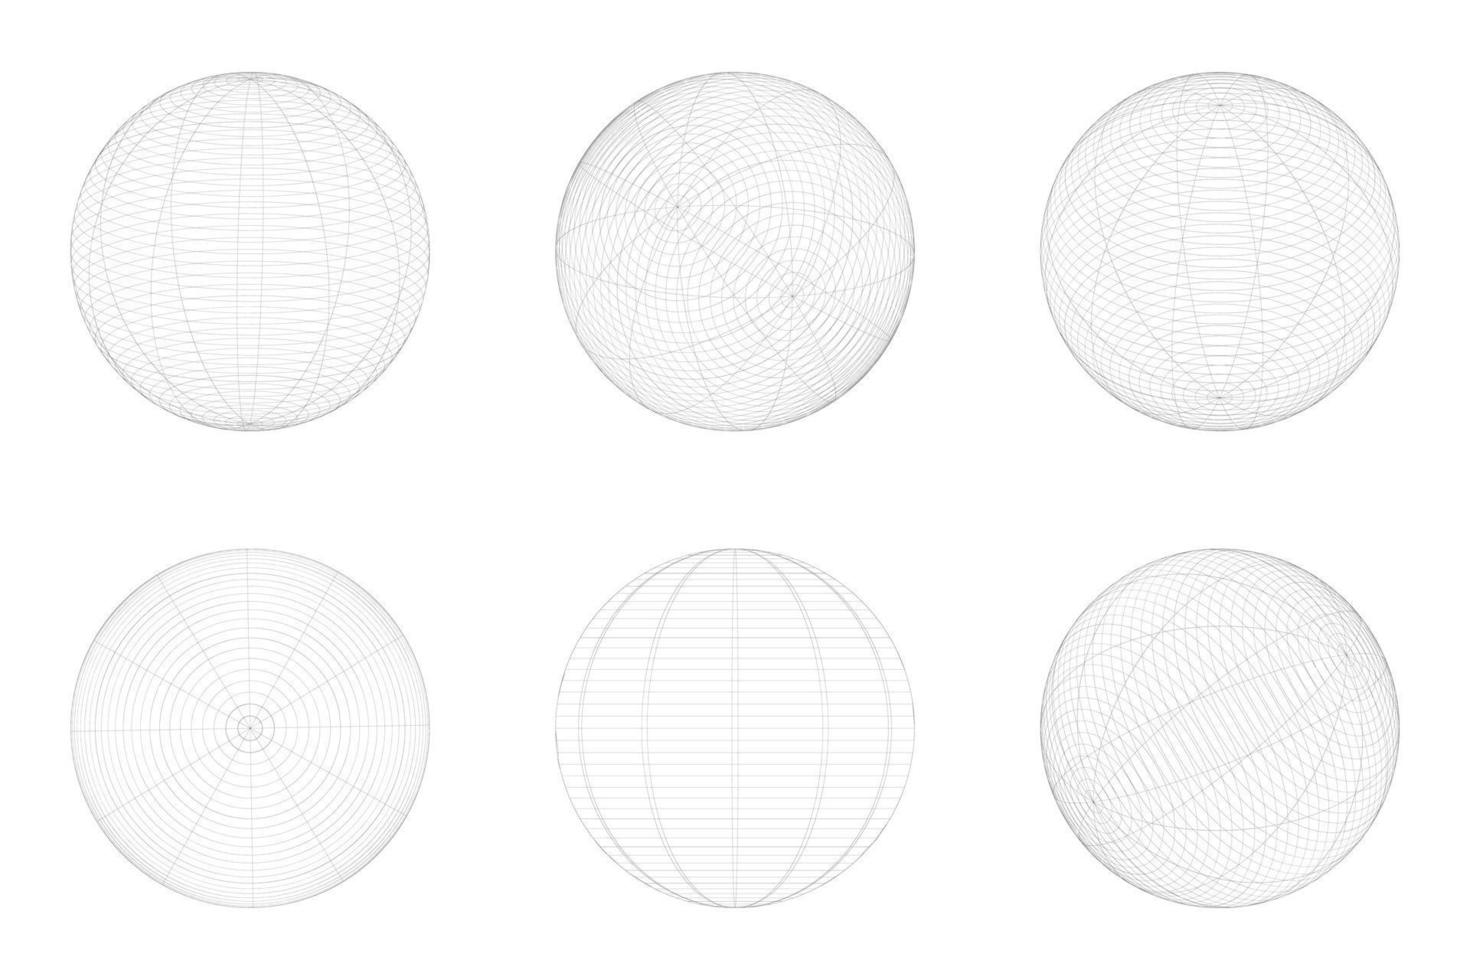 meetkundig vorm van gebied 3d ontwerp in technologie stijl. abstract cirkel vector illustratie.